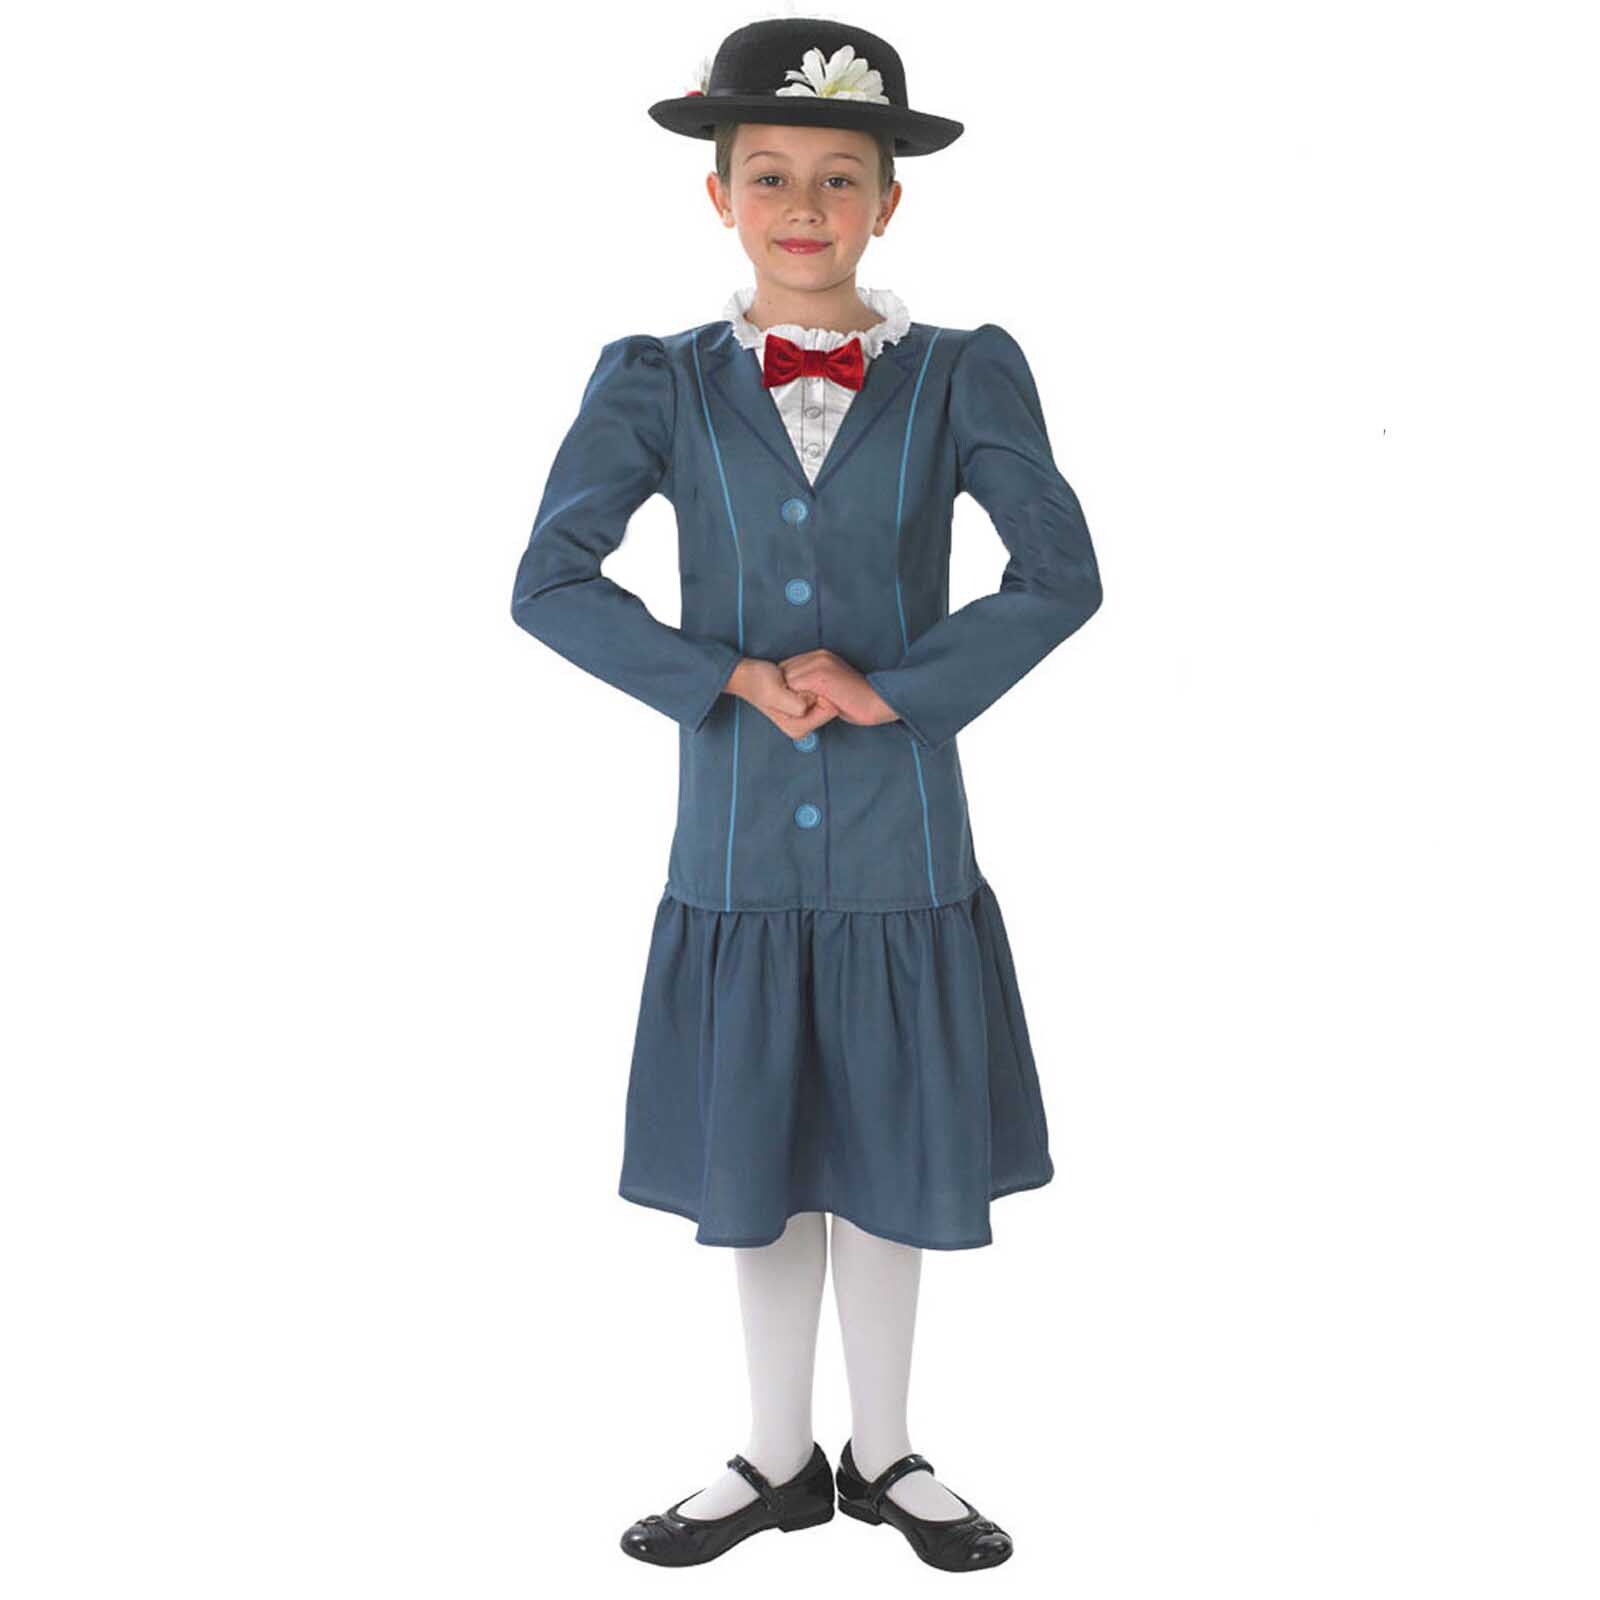 Mary poppins kostüm